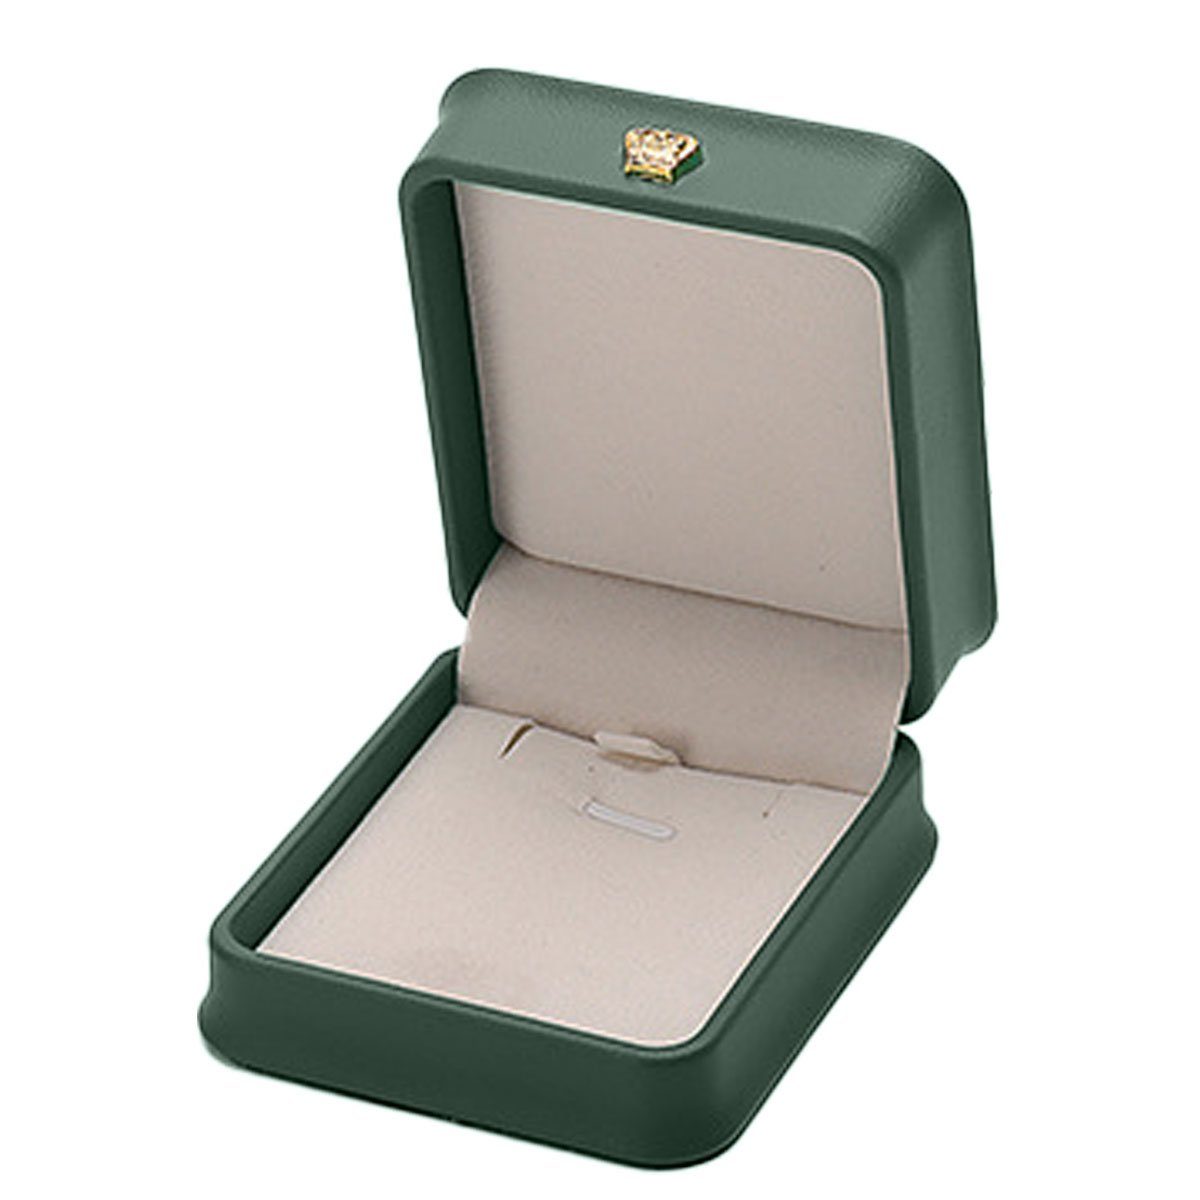 Ring-Box,ring Schmuck Ring,Samt Jormftte Geschenkverpackung Schmuckkasten für Etui grün